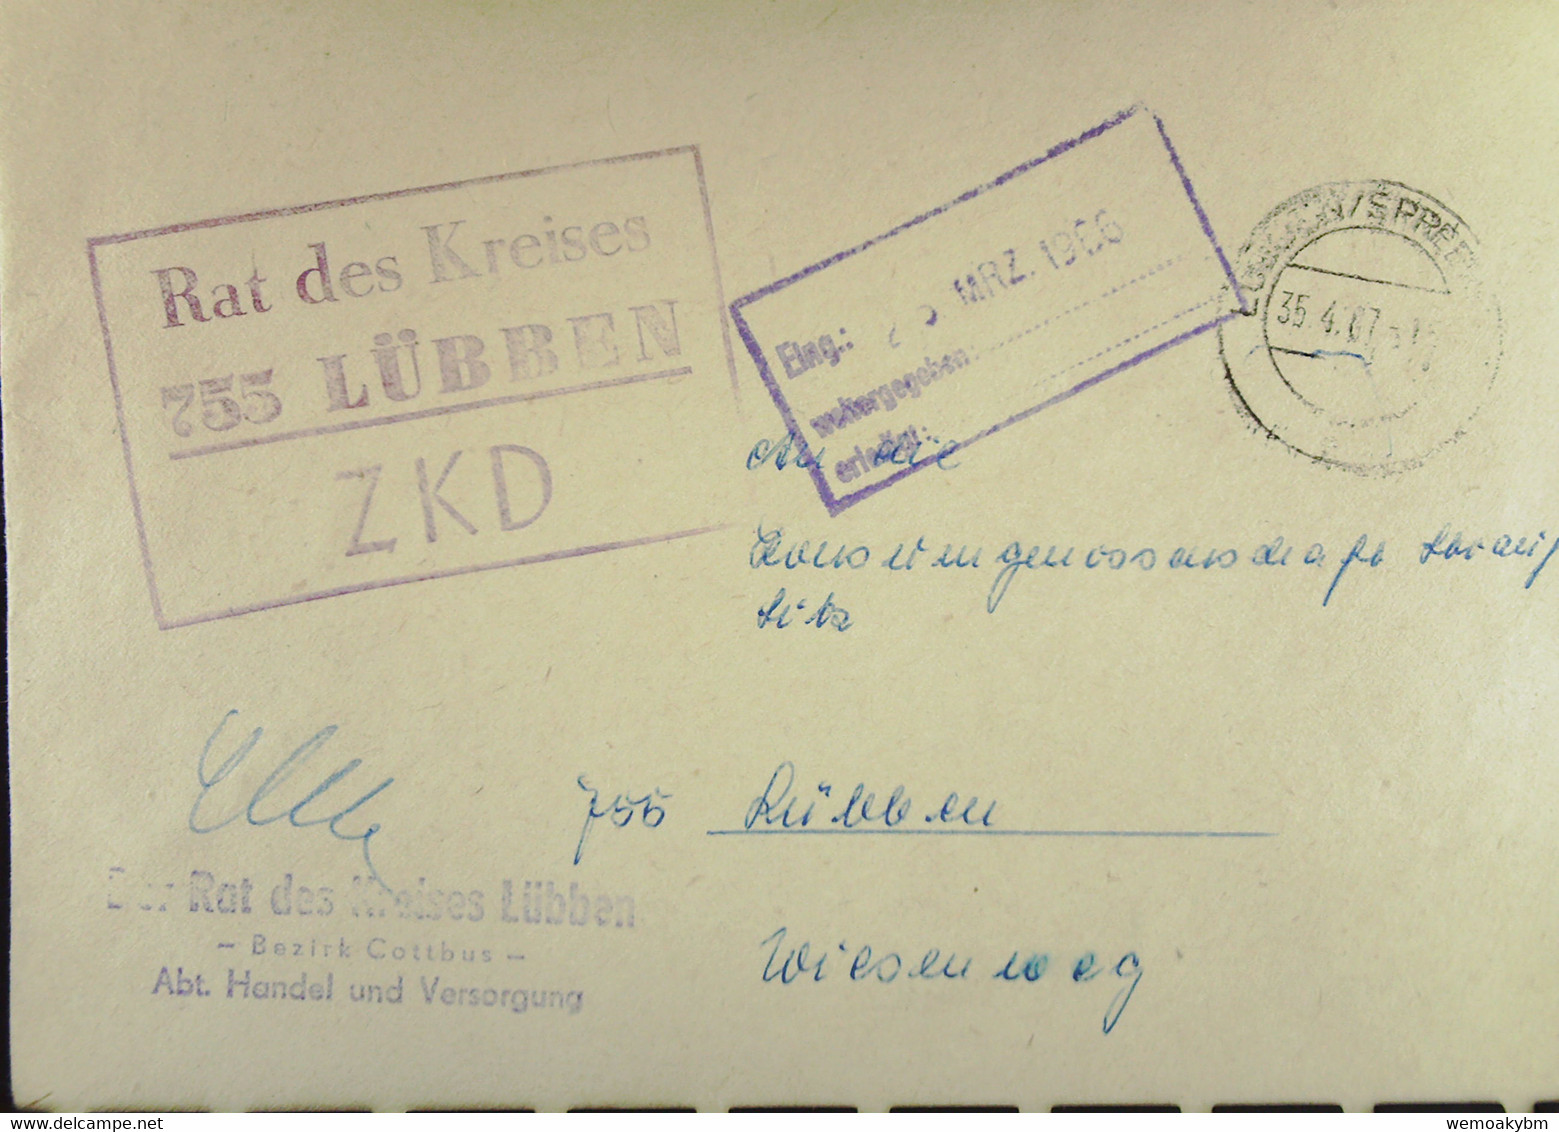 Orts-Brief Mit ZKD-Kastenstempel "Rat Des Kreises 755 LÜBBEN" V. "35.4.67" Angekommen Aber Am 25. MRZ. 1966 Lt. Eing-Stp - Servicio Central De Correos